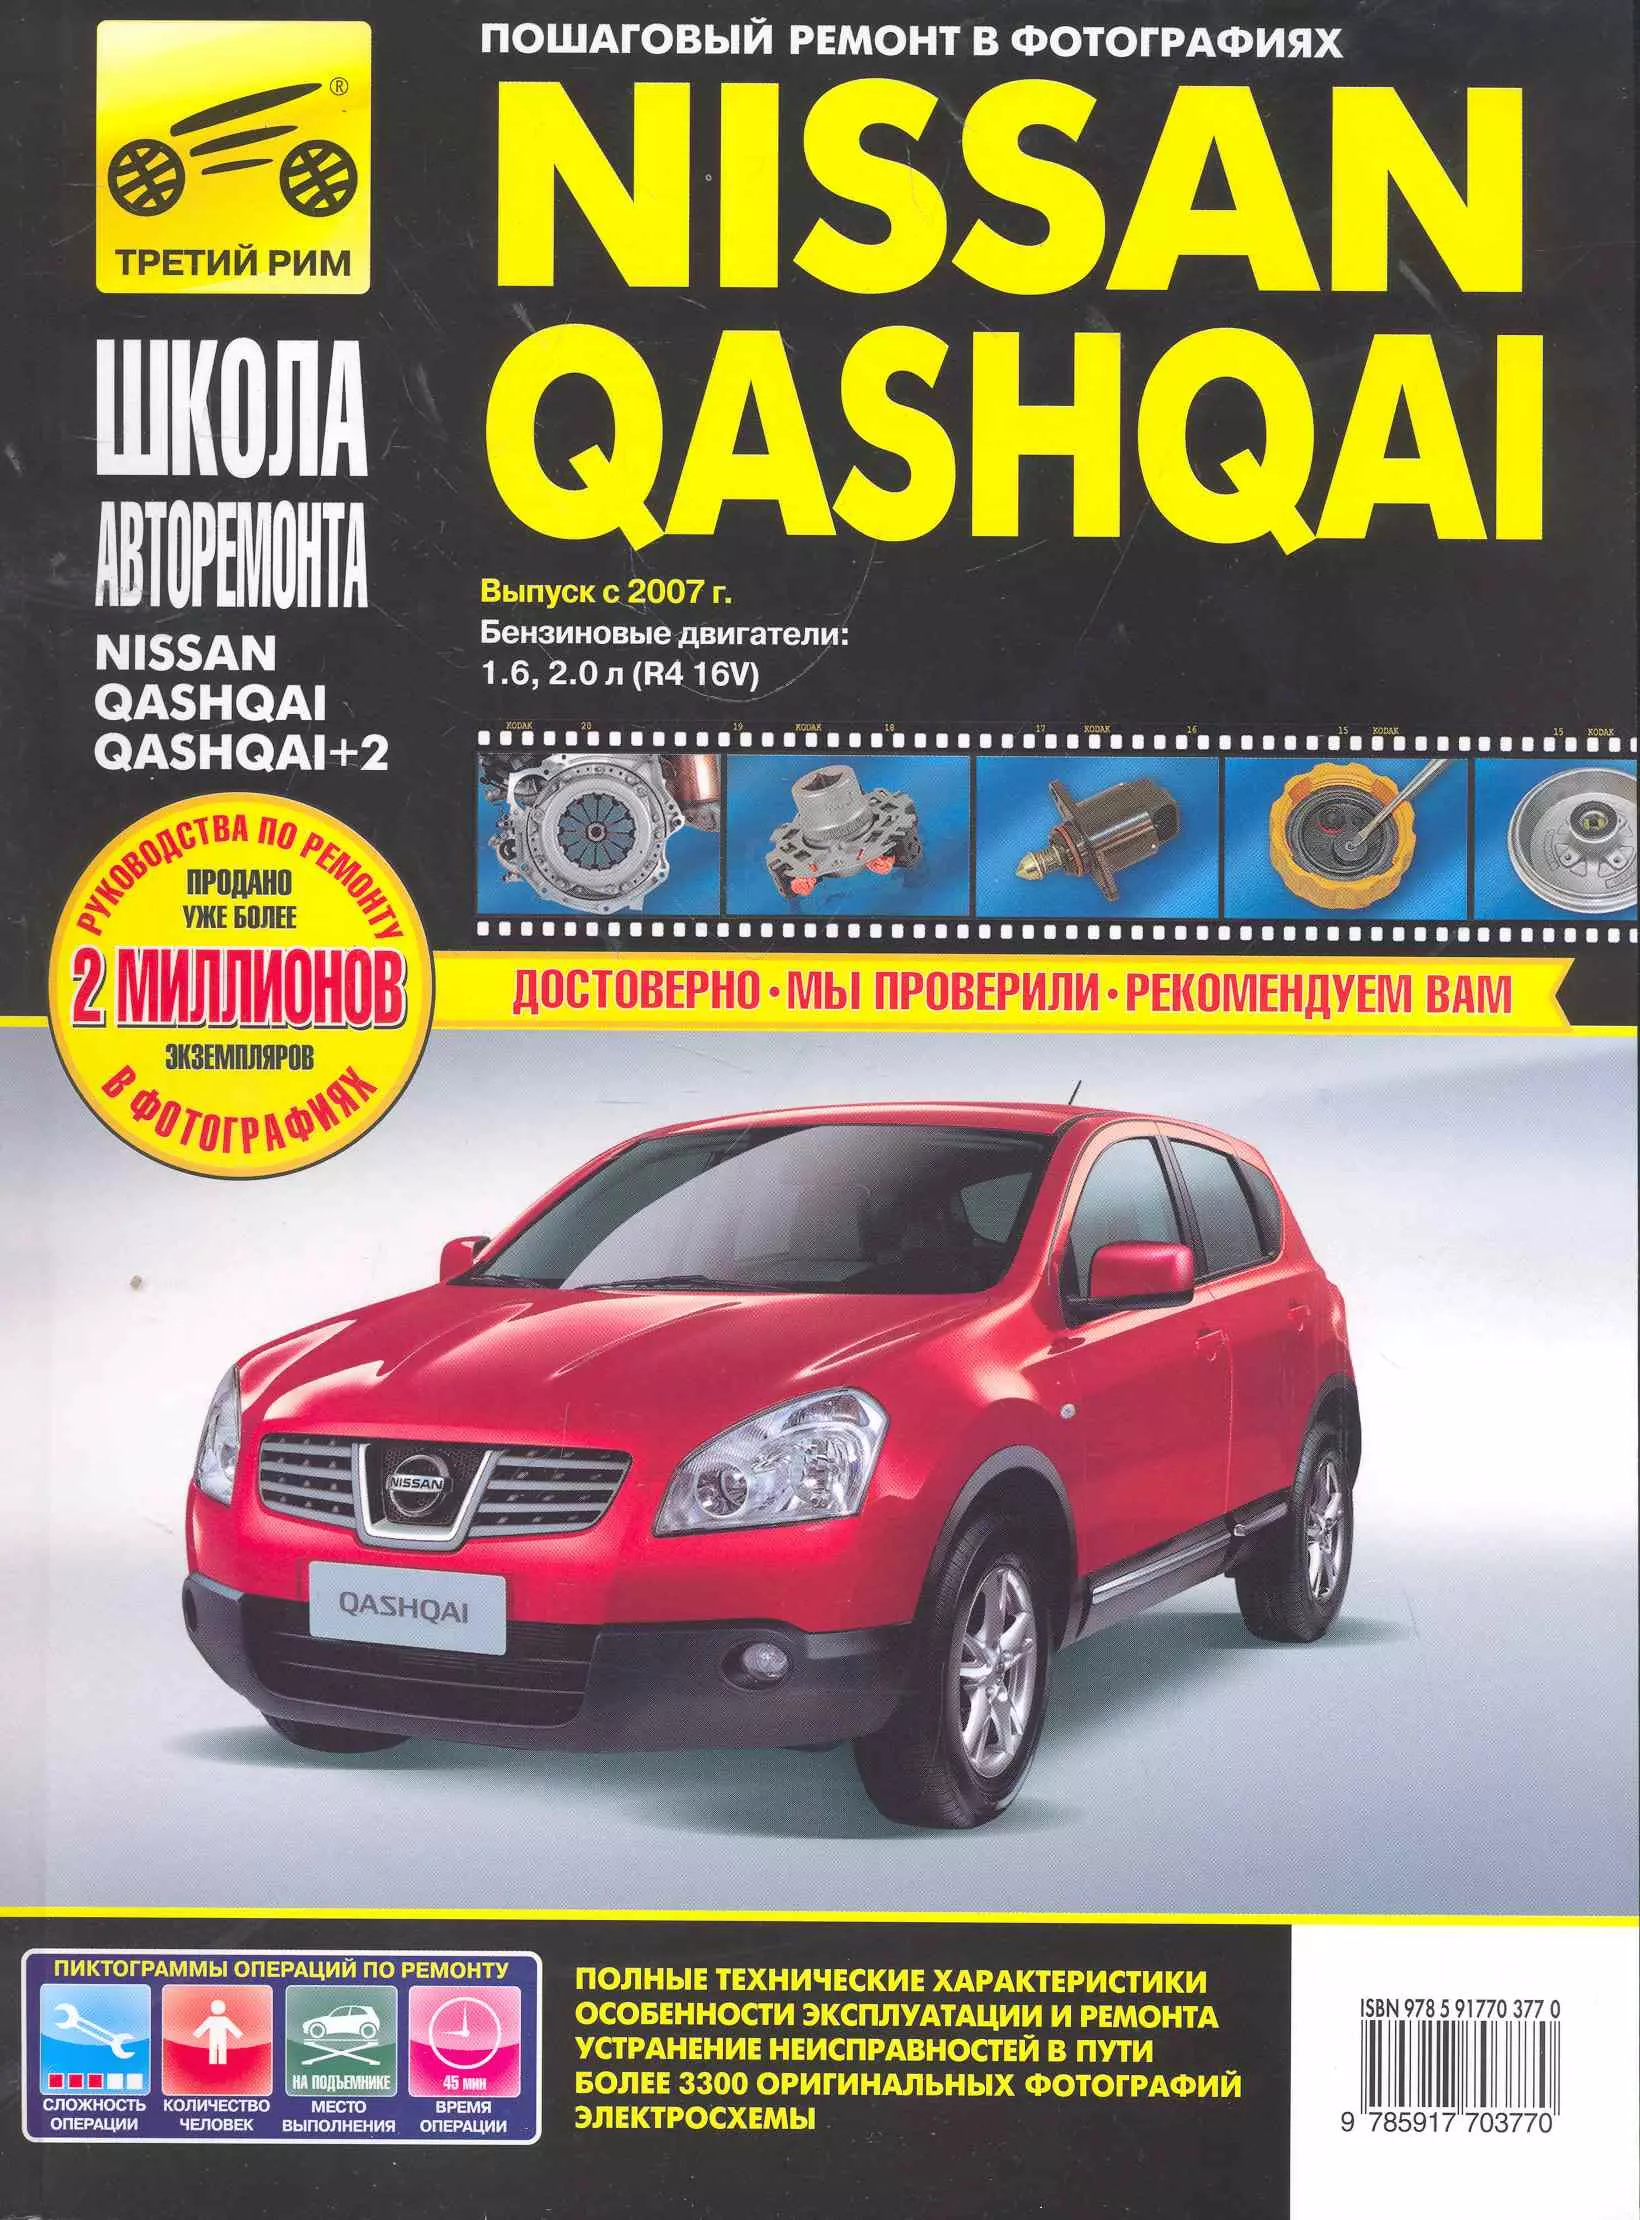  - Nissan Qashqai/ + 2 с 2007 г. бенз. дв. 1.6 2.0 ч/б фото рук. по рем.//с 2007 г.//